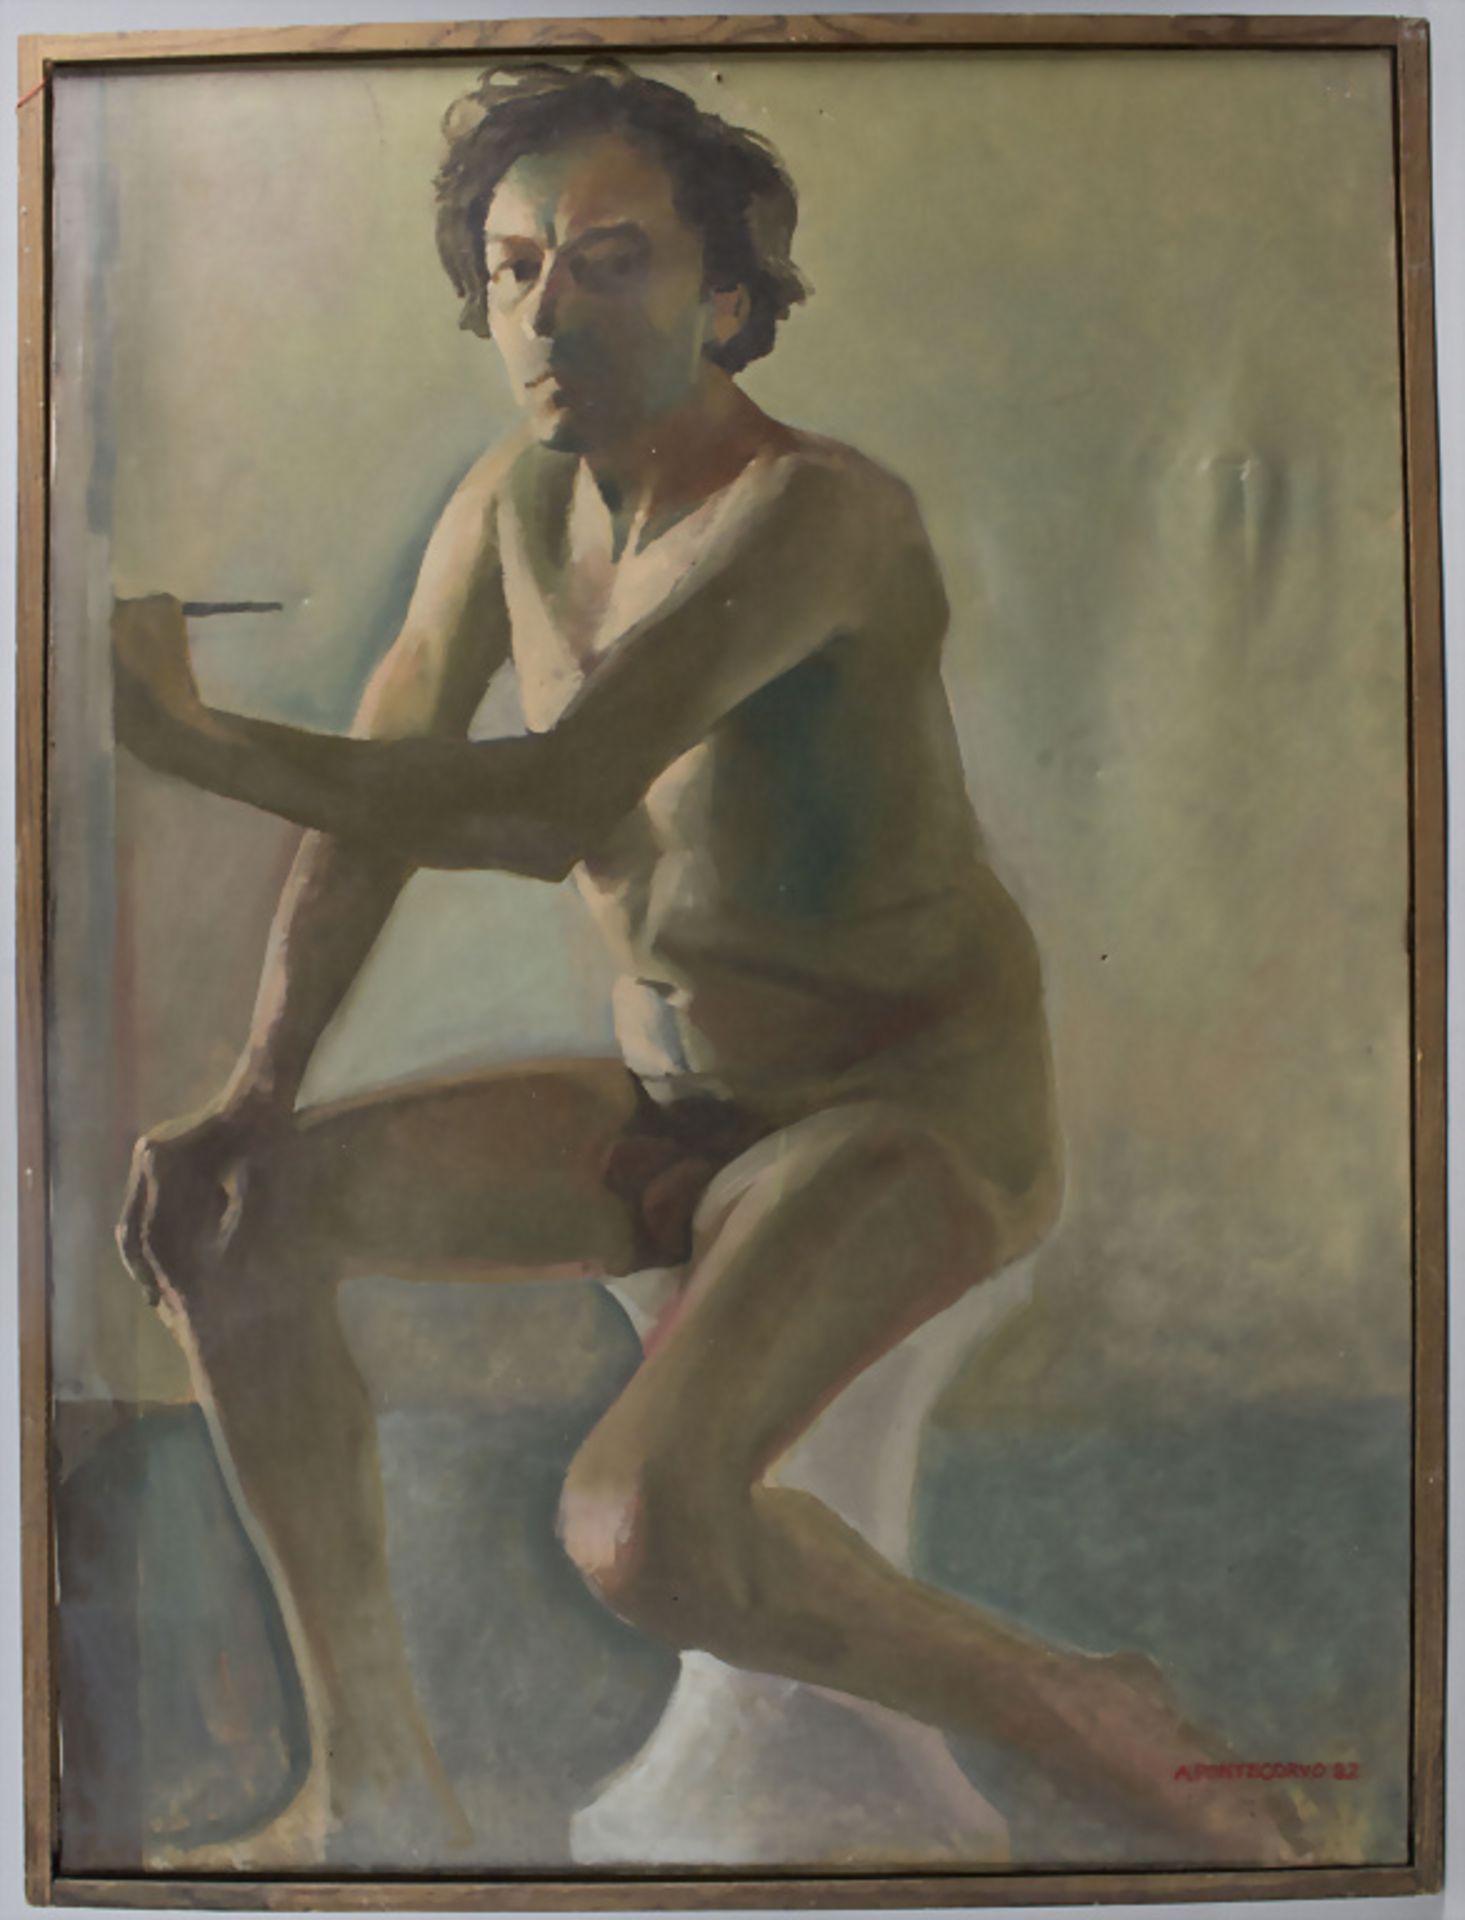 Alain PONTECORVO, 'Selbstporträt' / 'A self portrait', 1992 - Bild 2 aus 6